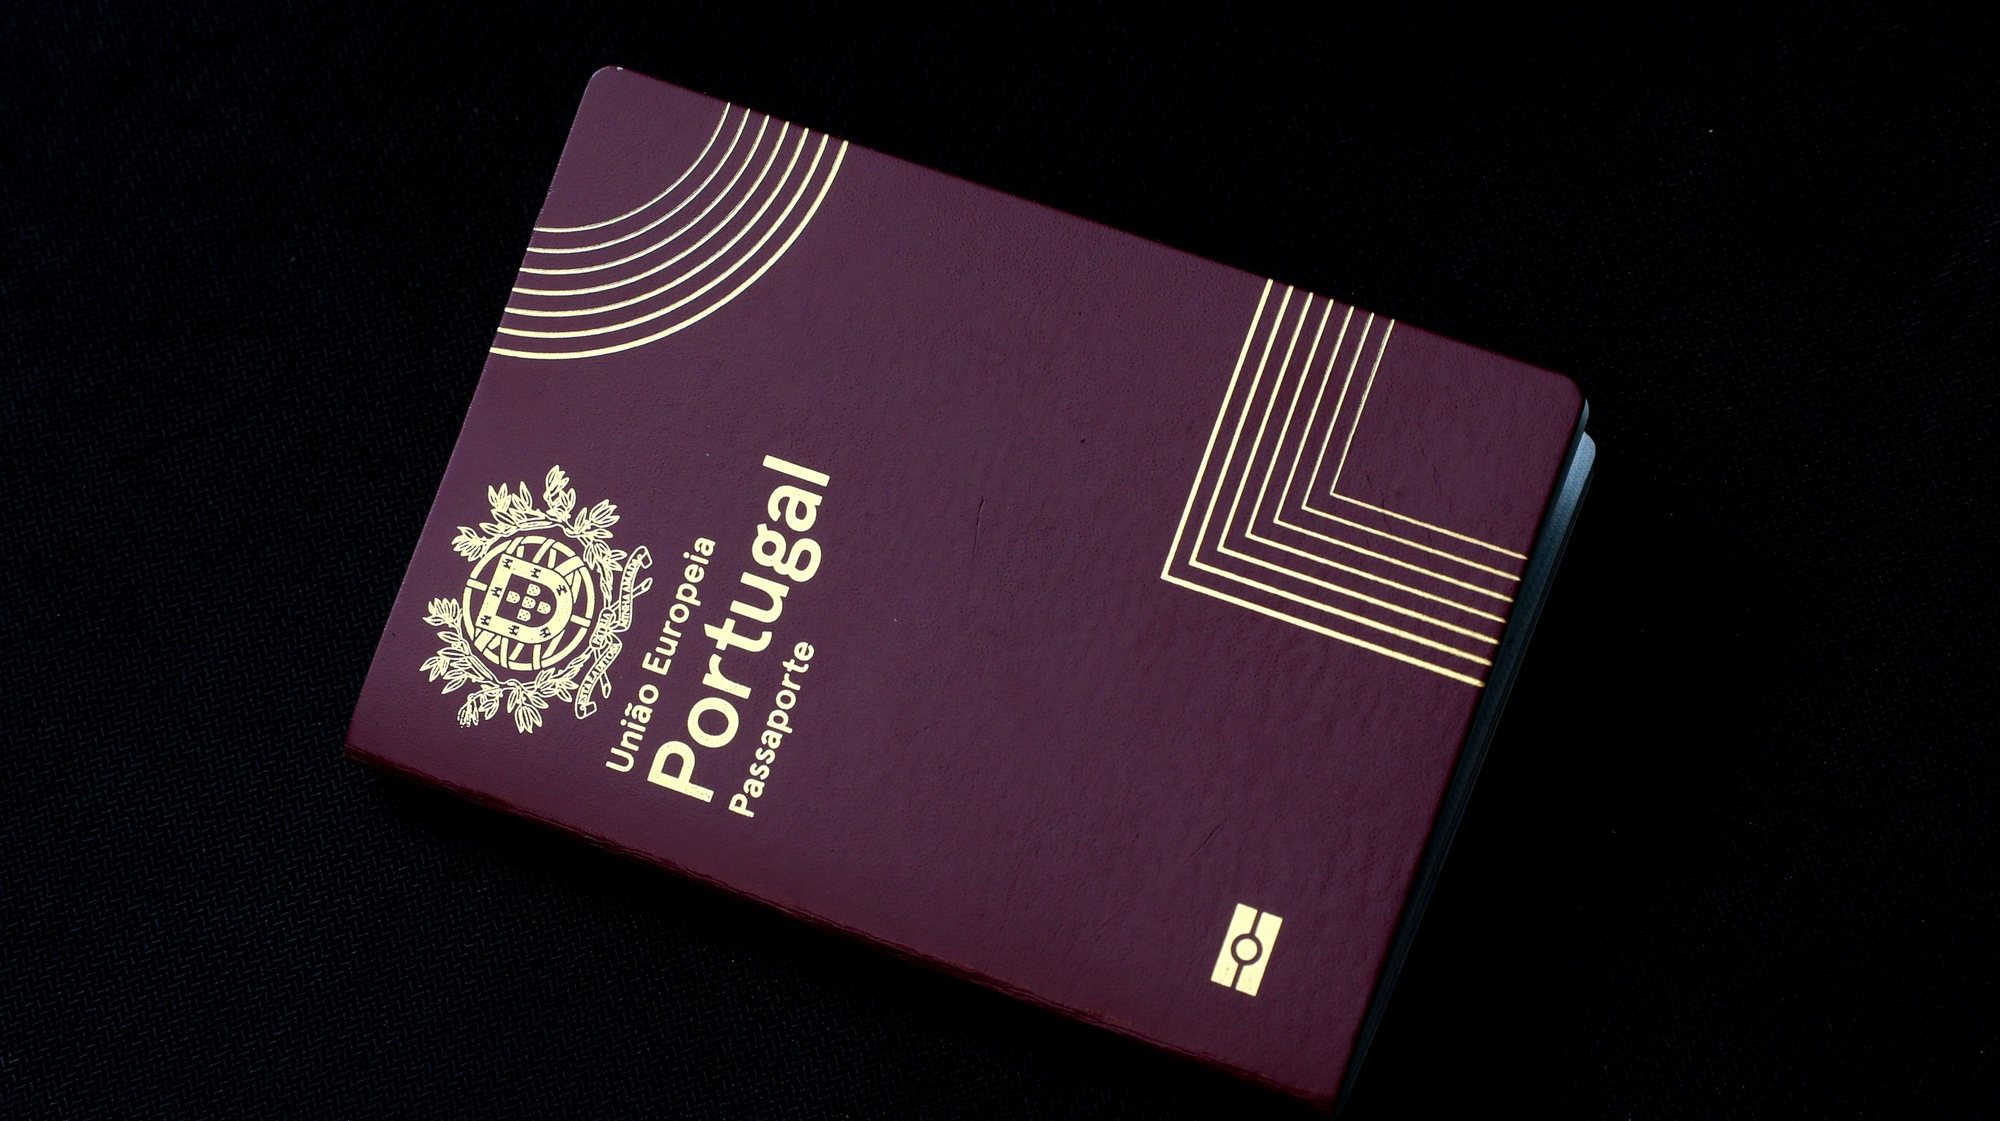 Passaporte emitido pelo governo português, Lisboa, 08 de outubro de 2021. ANTÓNIO COTRIM/LUSA